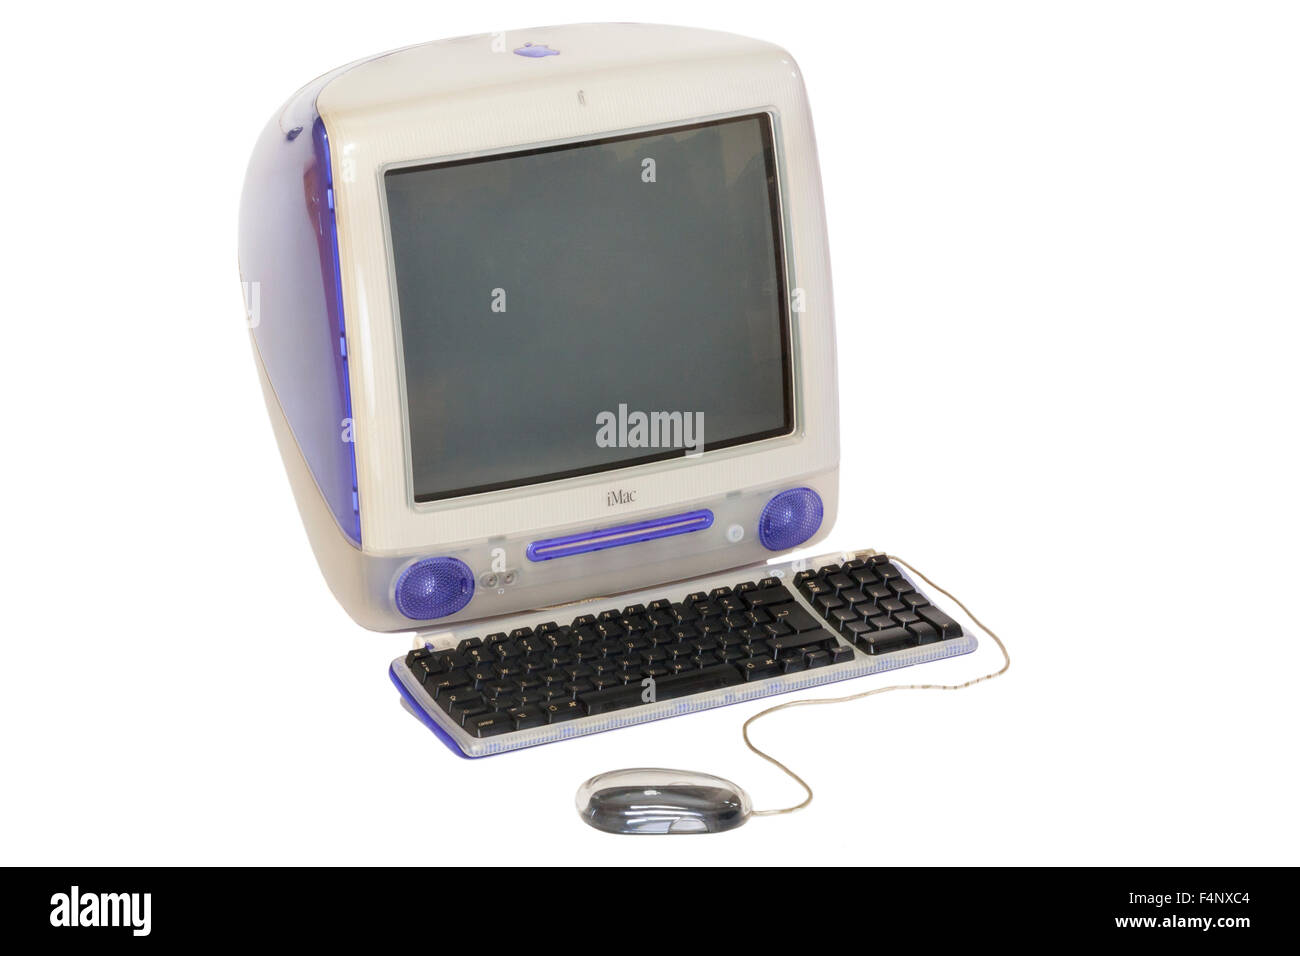 Original / alte Apple iMac persönliche Schreibtisch Top Power PC G3 Computermodell mit CRT geben Sie Bildschirm, 1990er Modell läuft Mac OS 9. Stockfoto